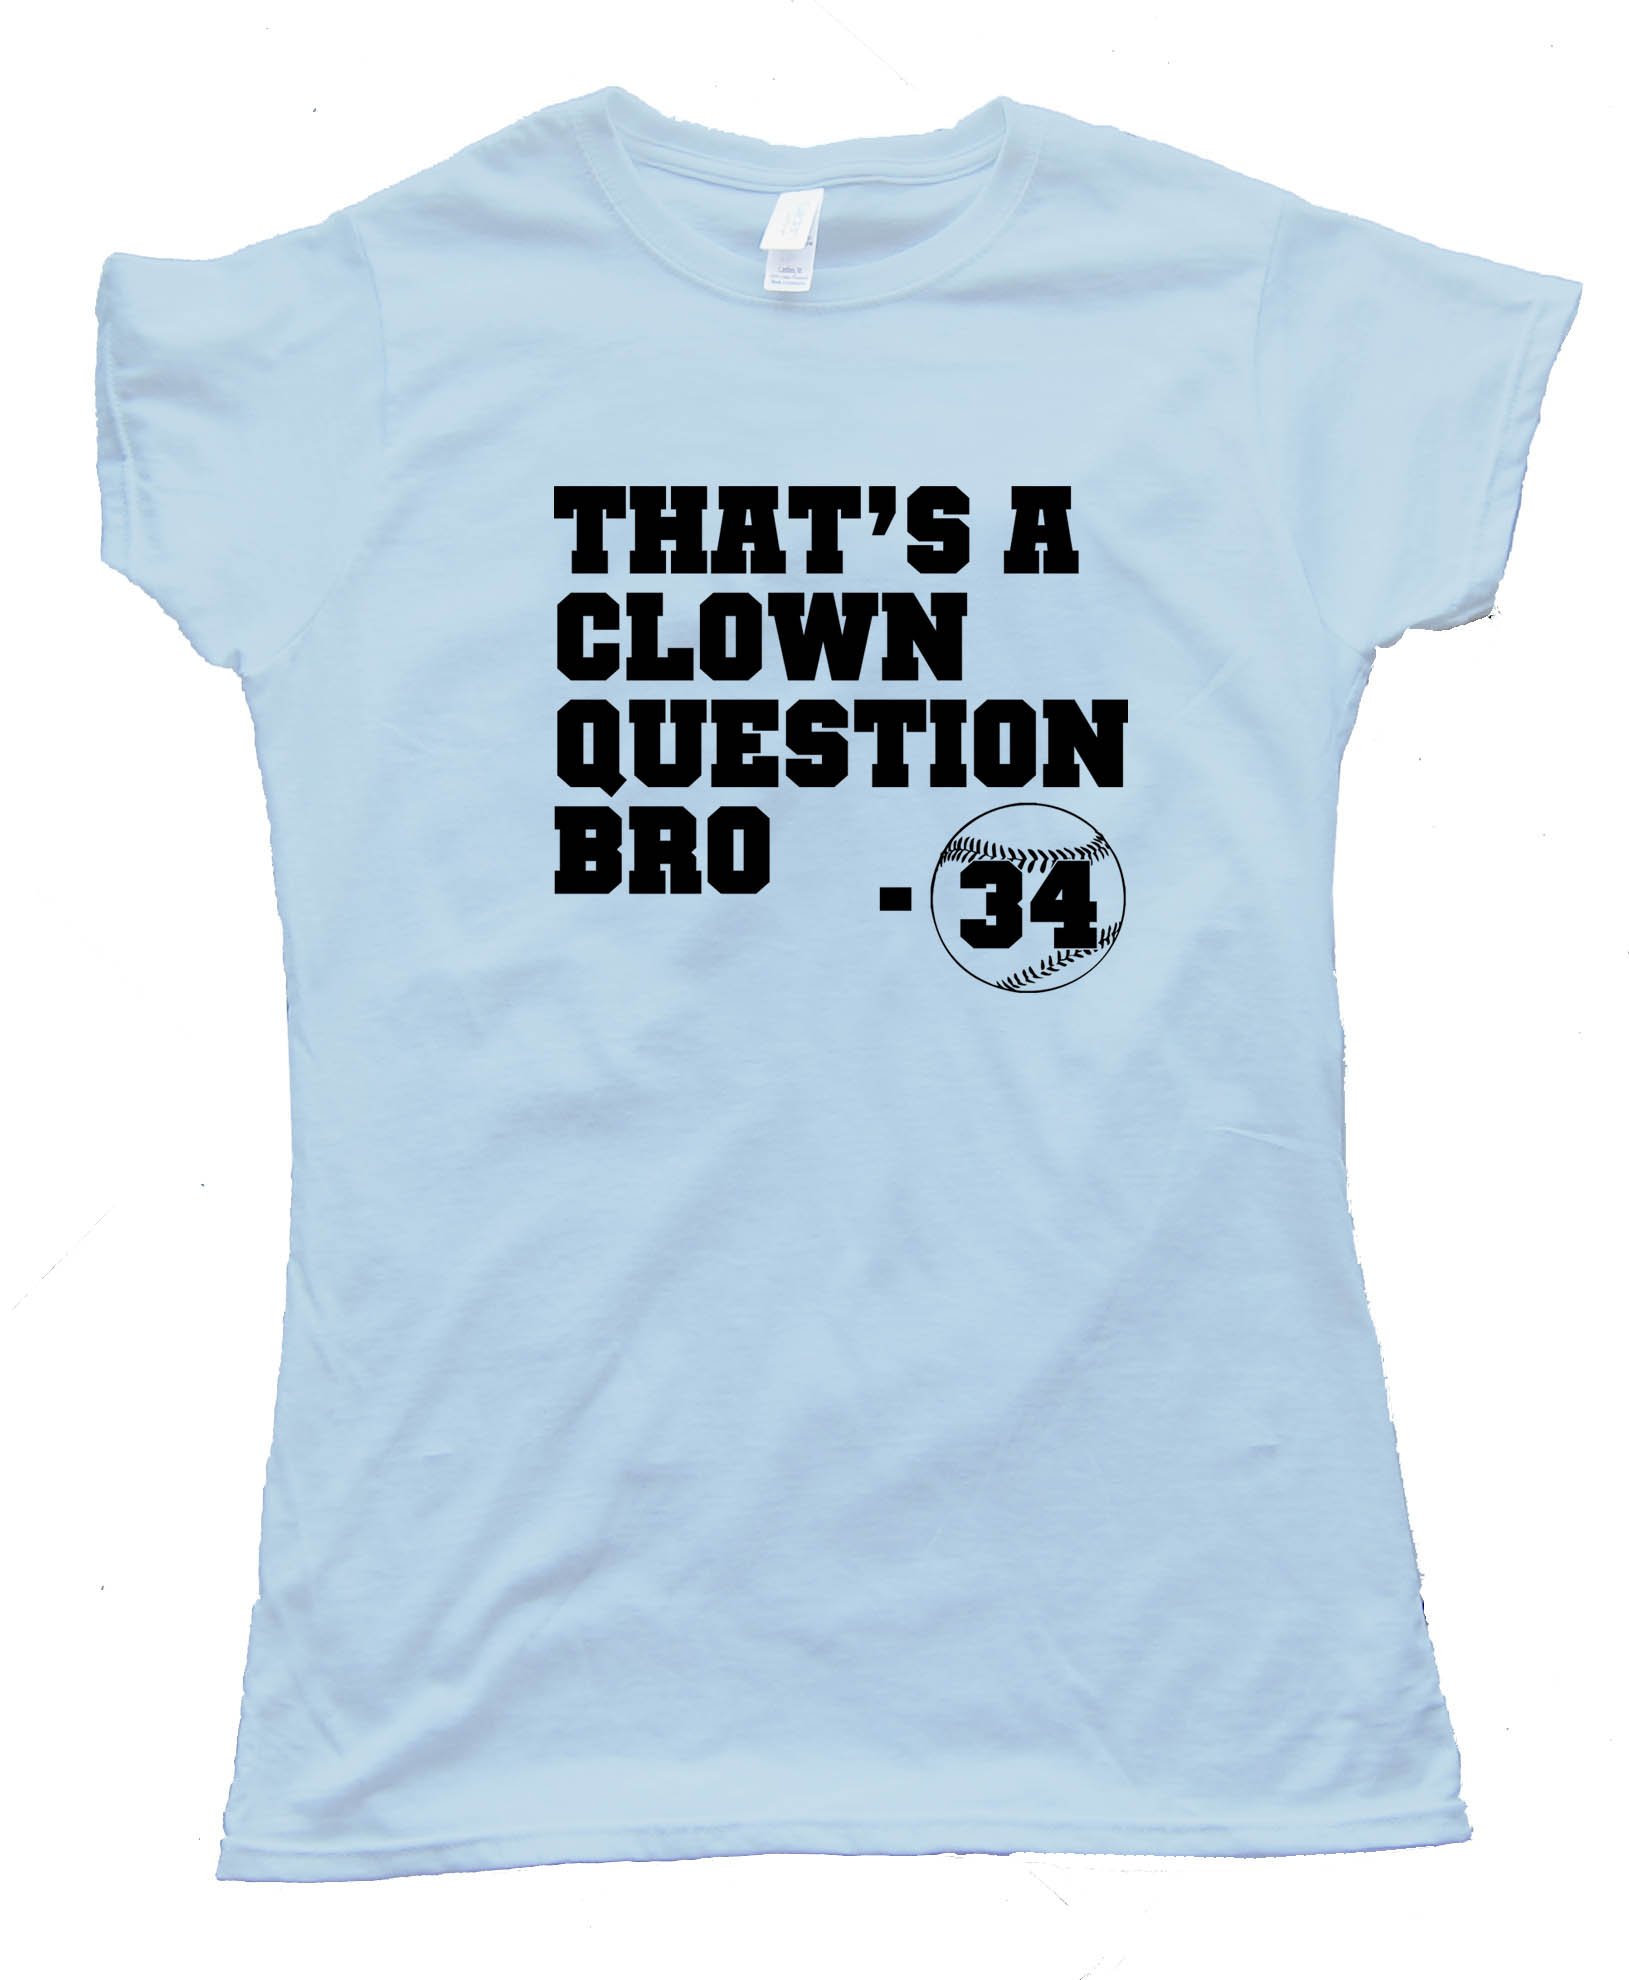 Womens Clown Question Bro - Bryce Harper - Tee Shirt